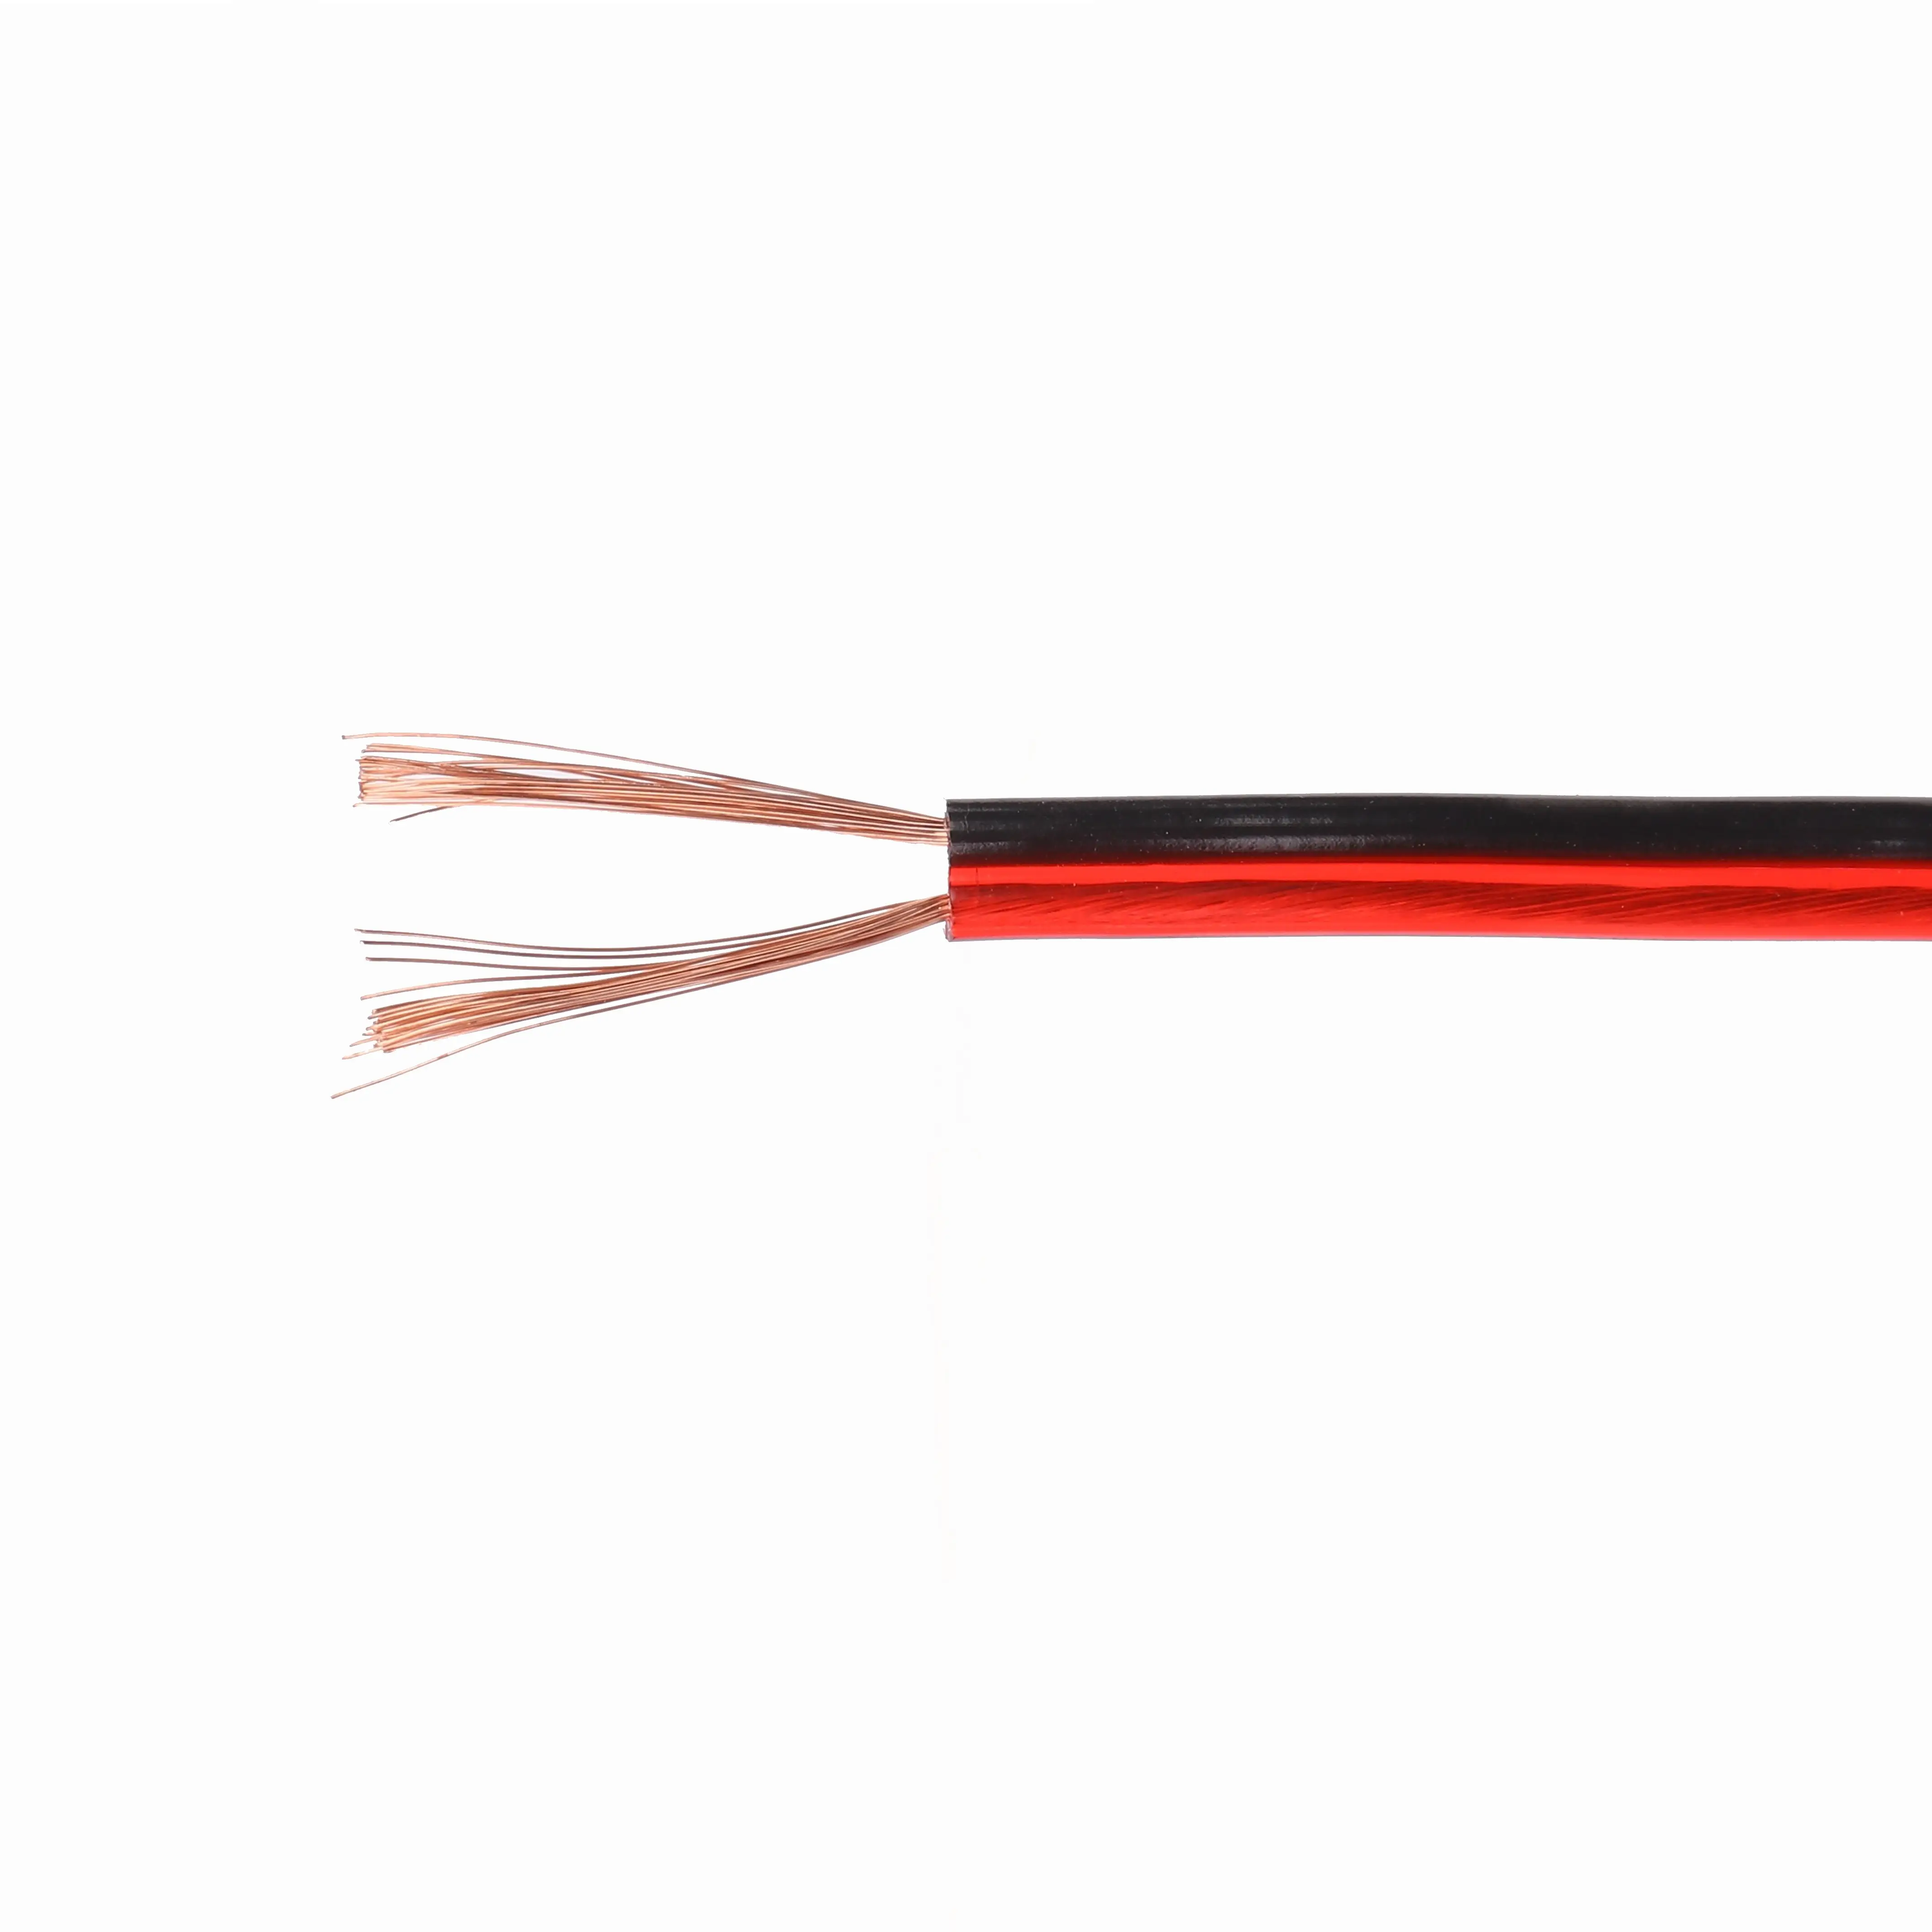 Lautsprecher kabel Audio-Kern kabel für Heim-Stereo-HiFi-/Car-Audio-System Rote und schwarze Instrumenten kabel